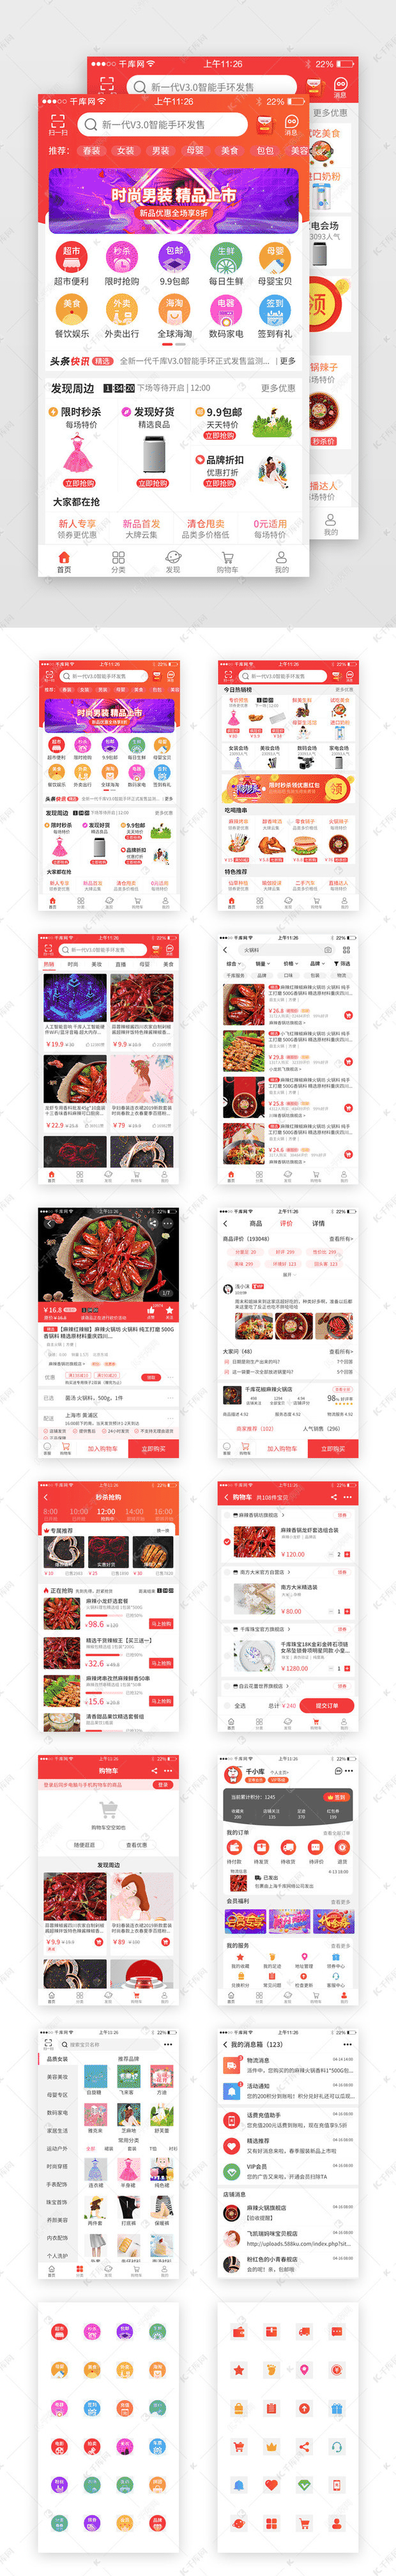 红色综合电商app界面设计套图psd源码